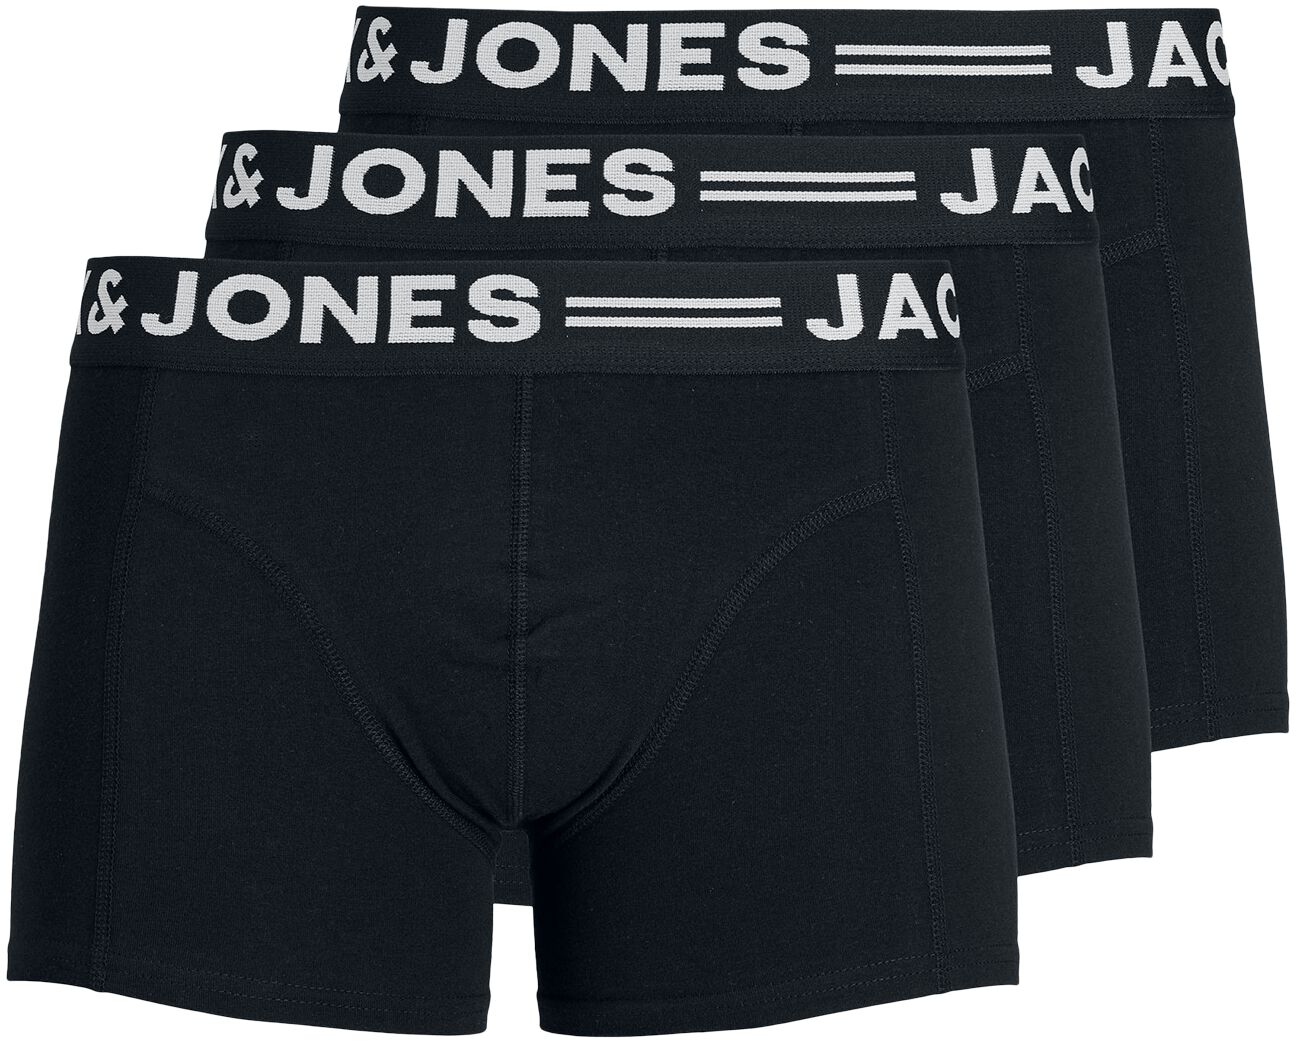 Jack & Jones Boxershort - SENSE TRUNKS 3-PACK - S bis L - für Männer - Größe M - schwarz von jack & jones